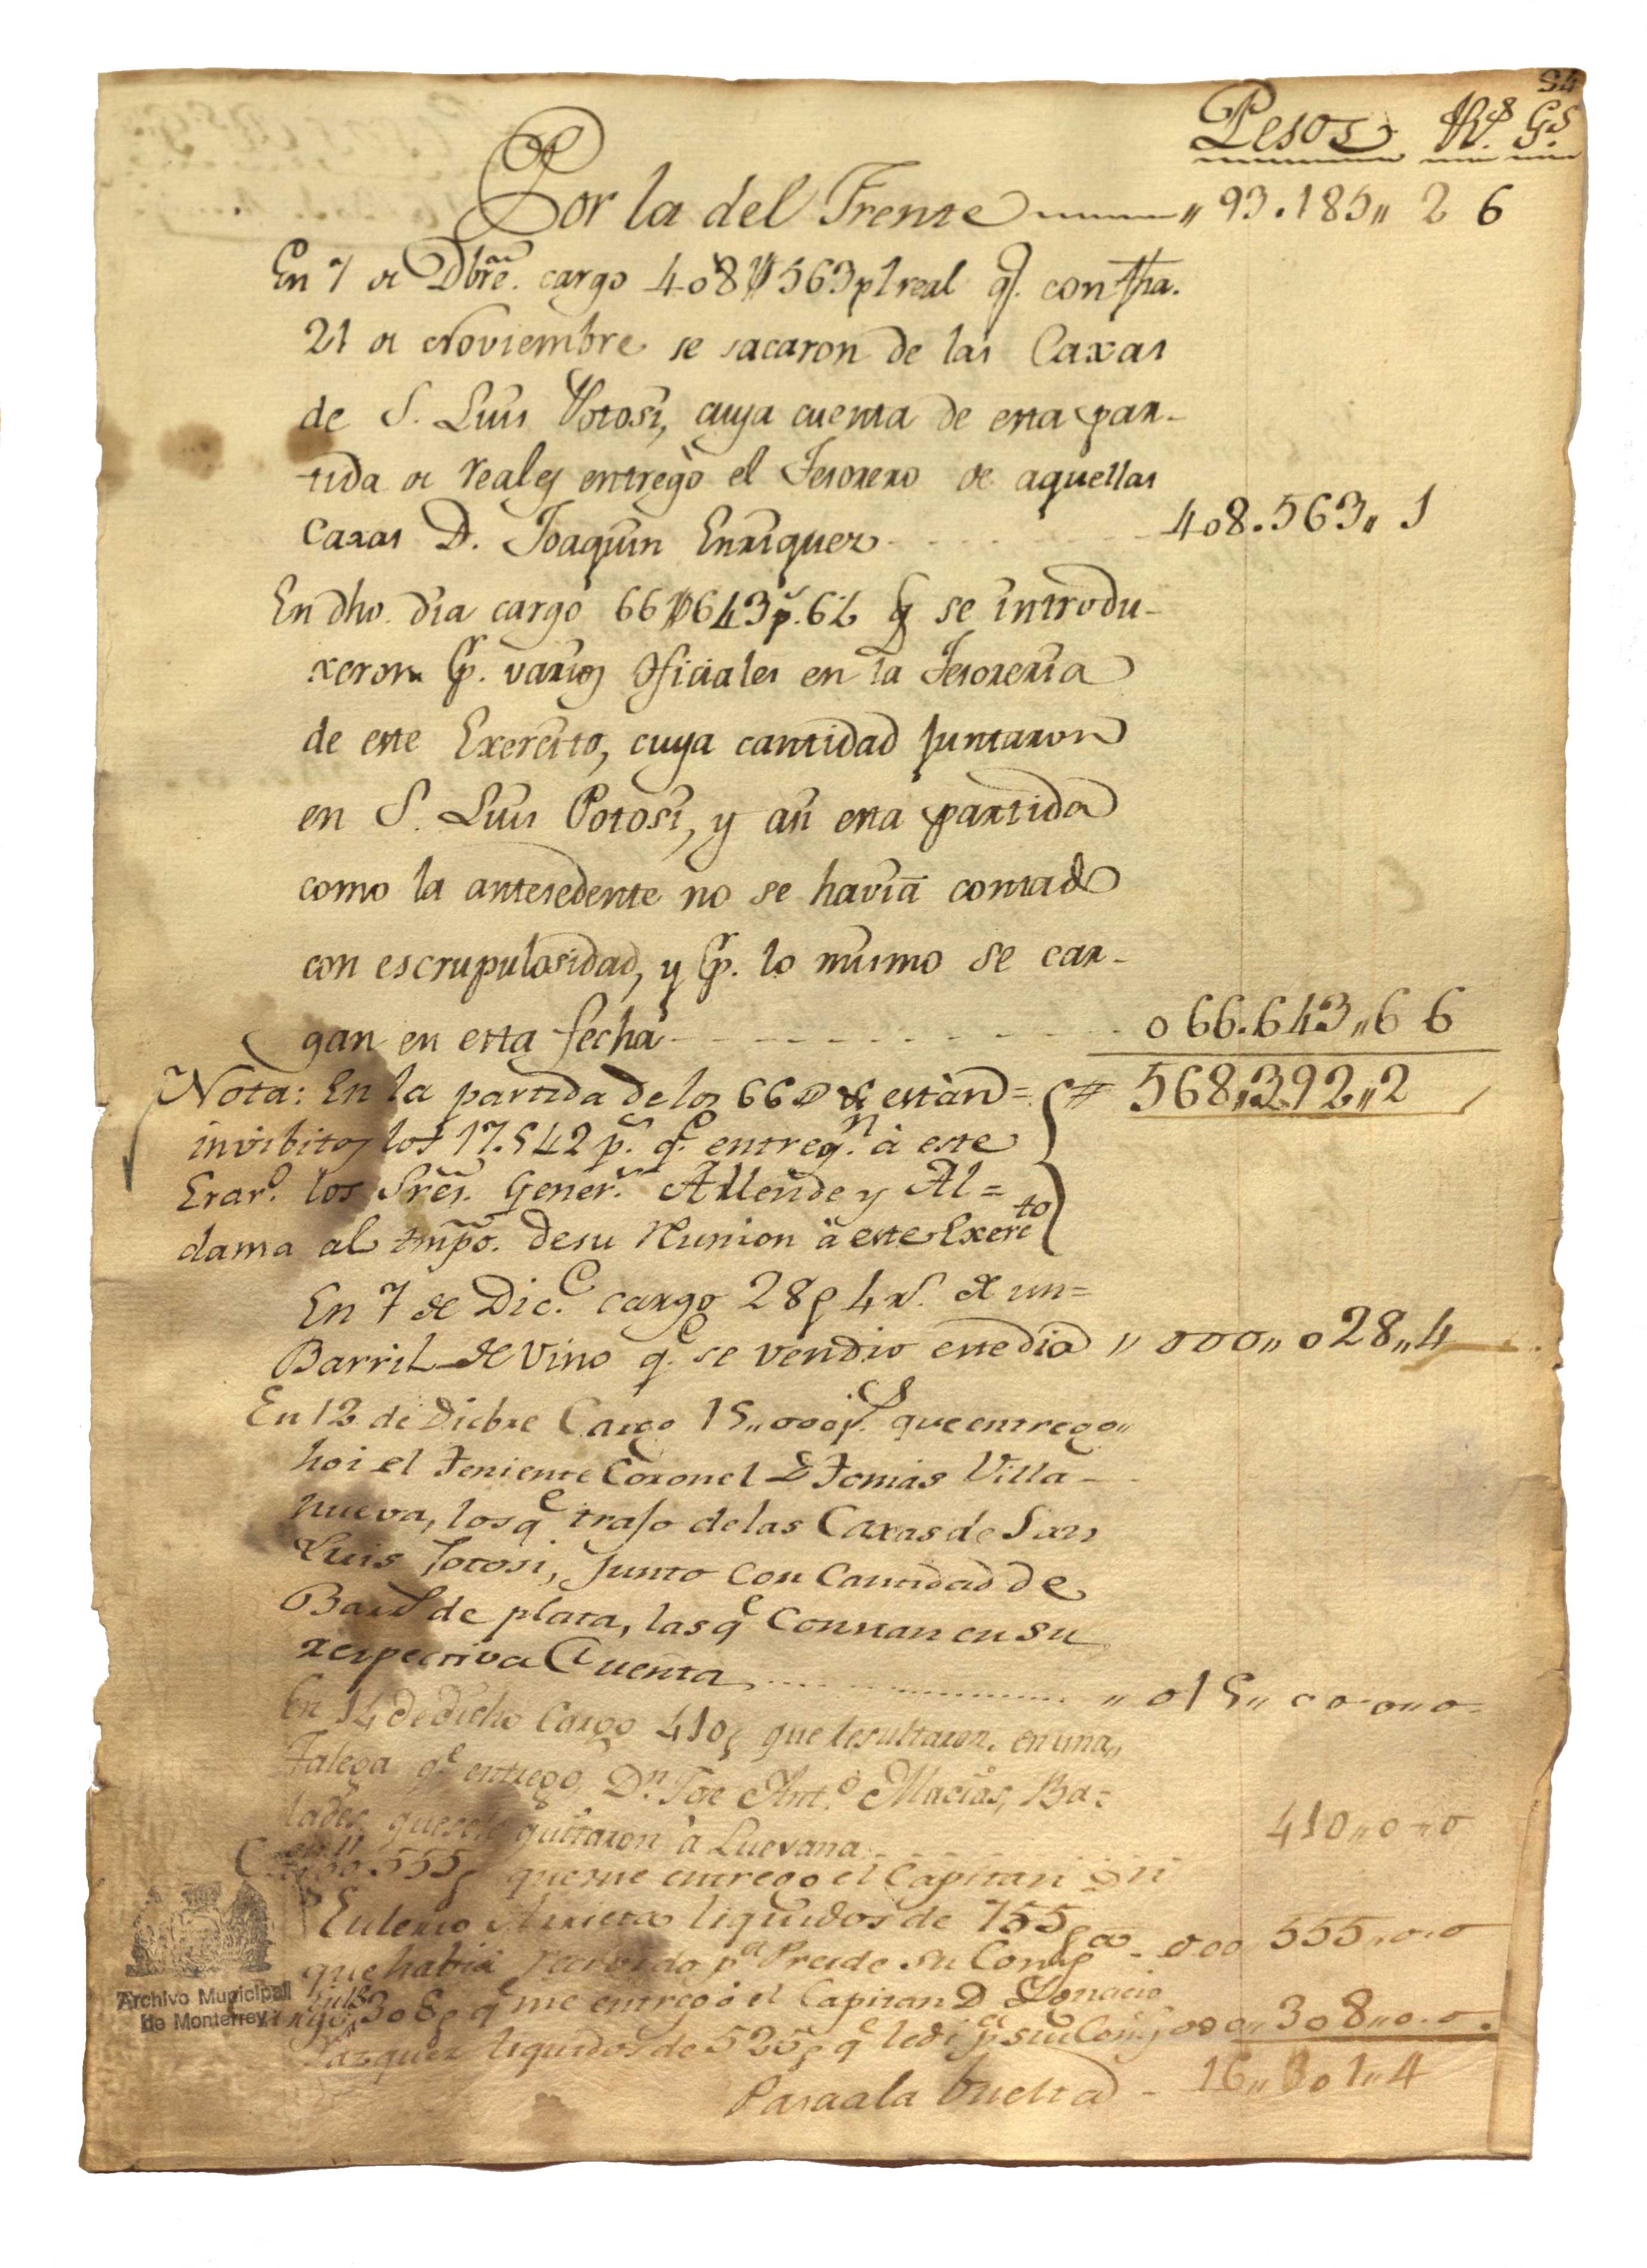 Libro de cuentas que el coronel Rafael Iriarte organizó durante octubre de 1810 y marzo de 1811 del Ejército Insurgente.